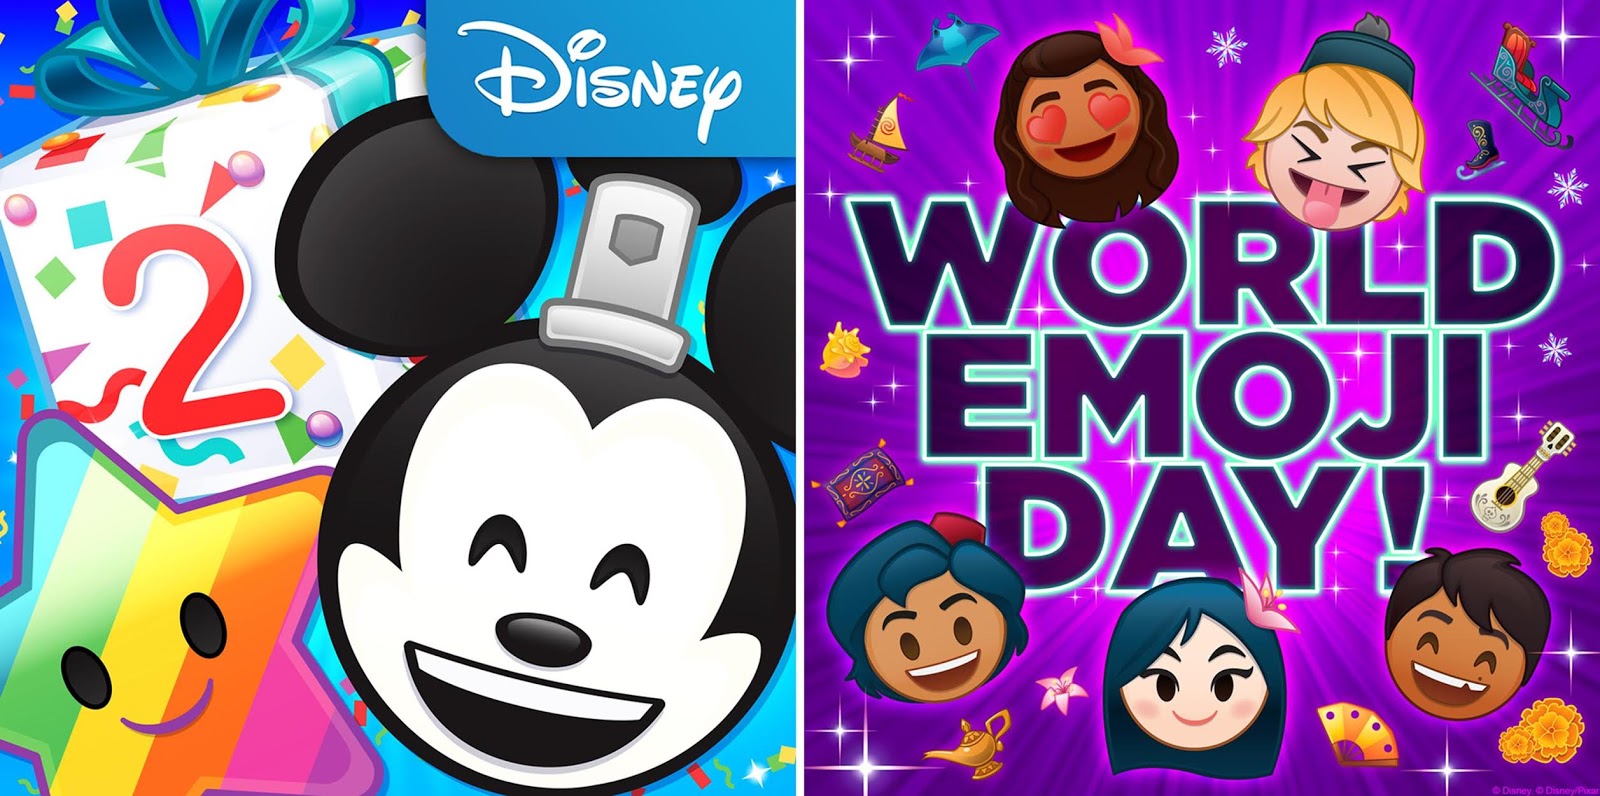 Disney Emoji Blitz Game Celebrates 2 Years Get Free